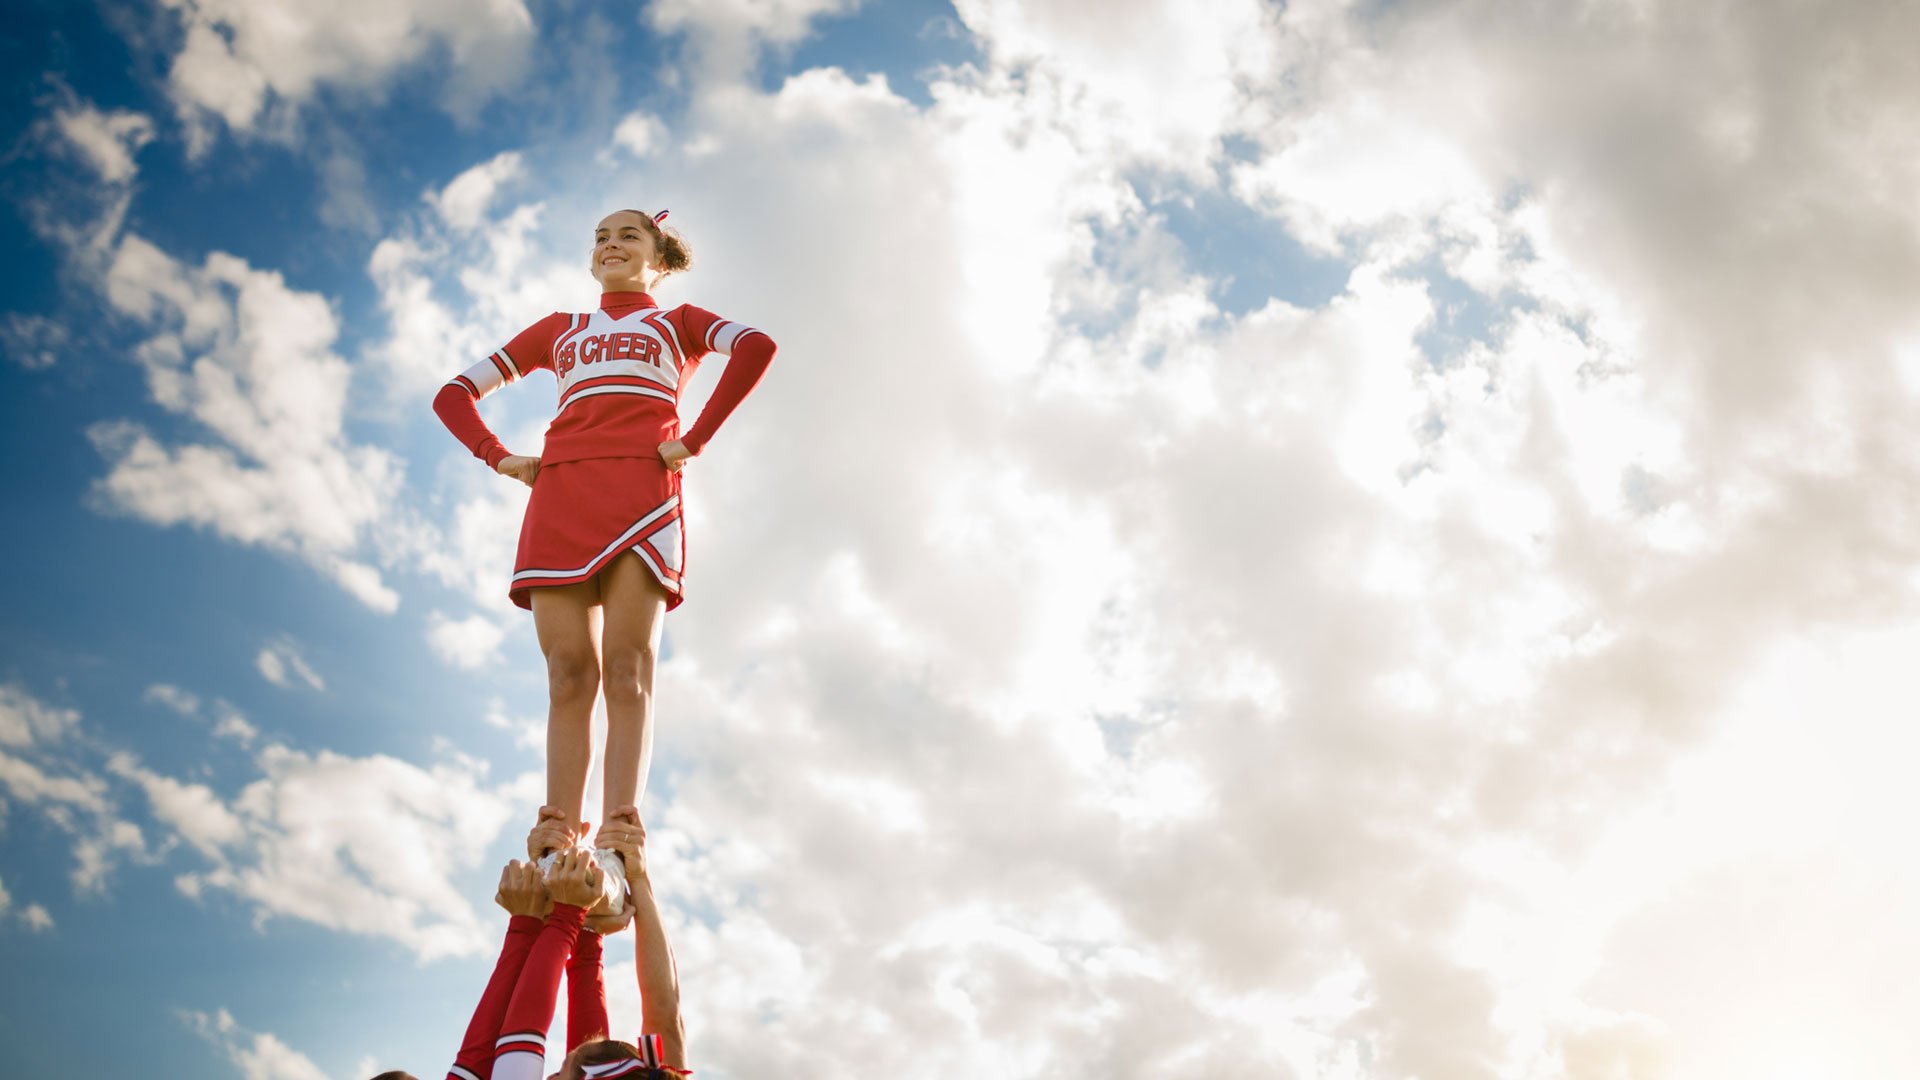 cheerleader being held in air